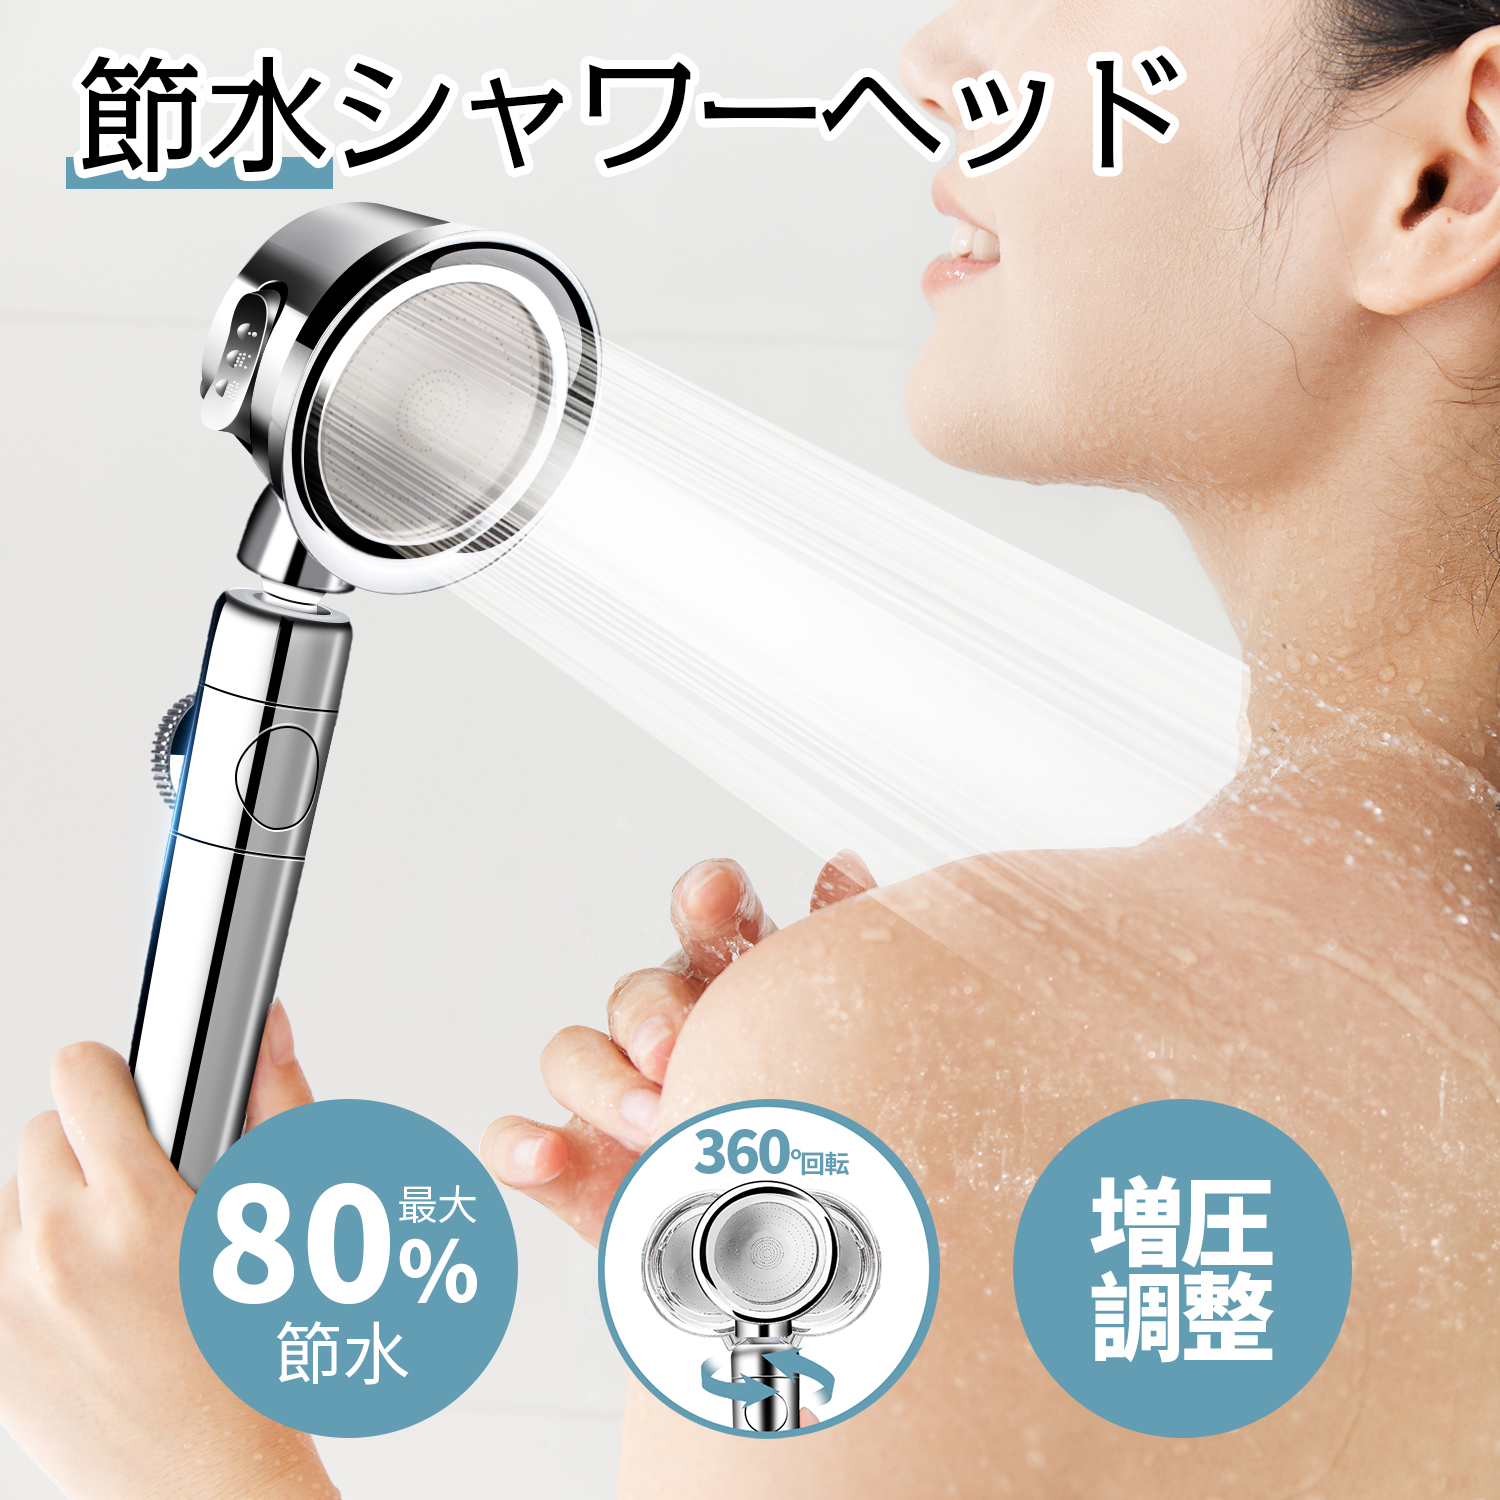 シャワーヘッド ナノバブル 節水 増圧 高洗浄力 ヘアケア 頭皮 毛穴 取付簡単